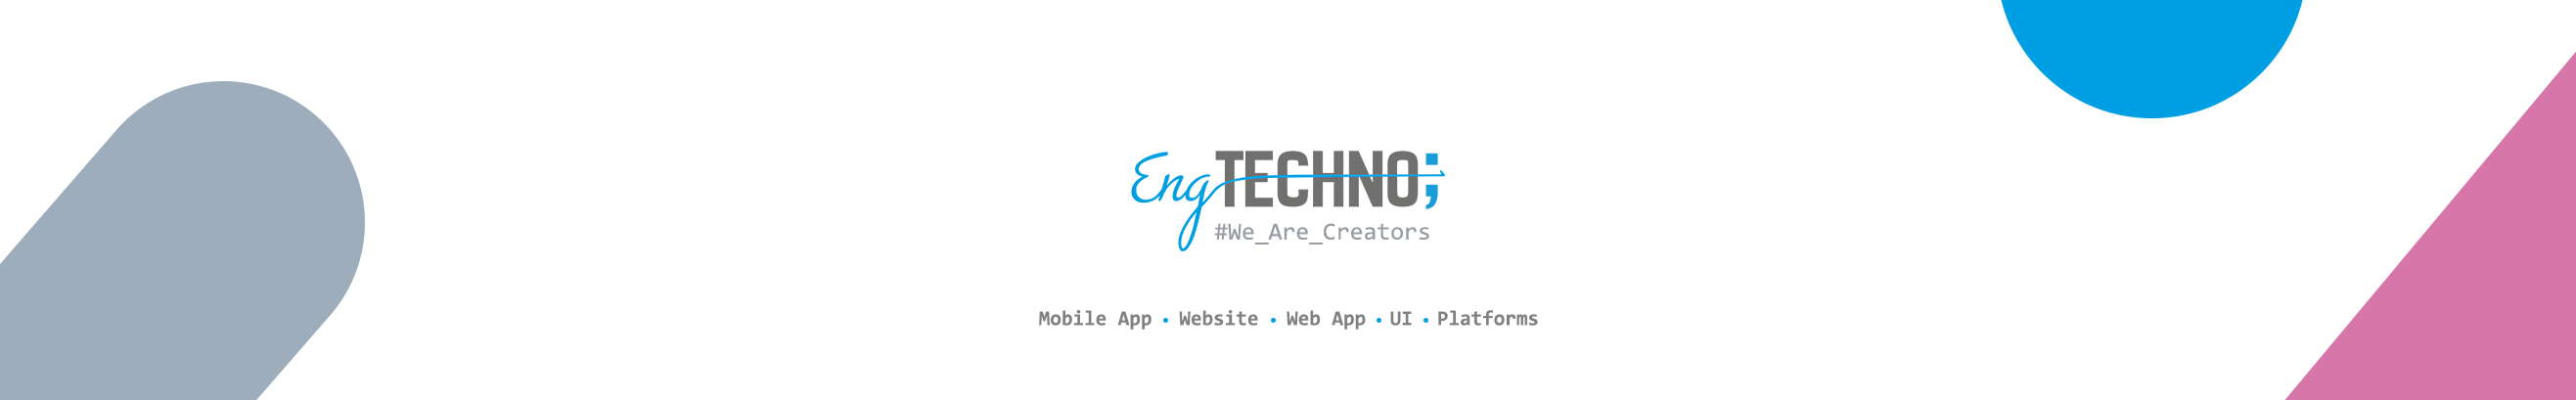 Banner de perfil de Eng Techno